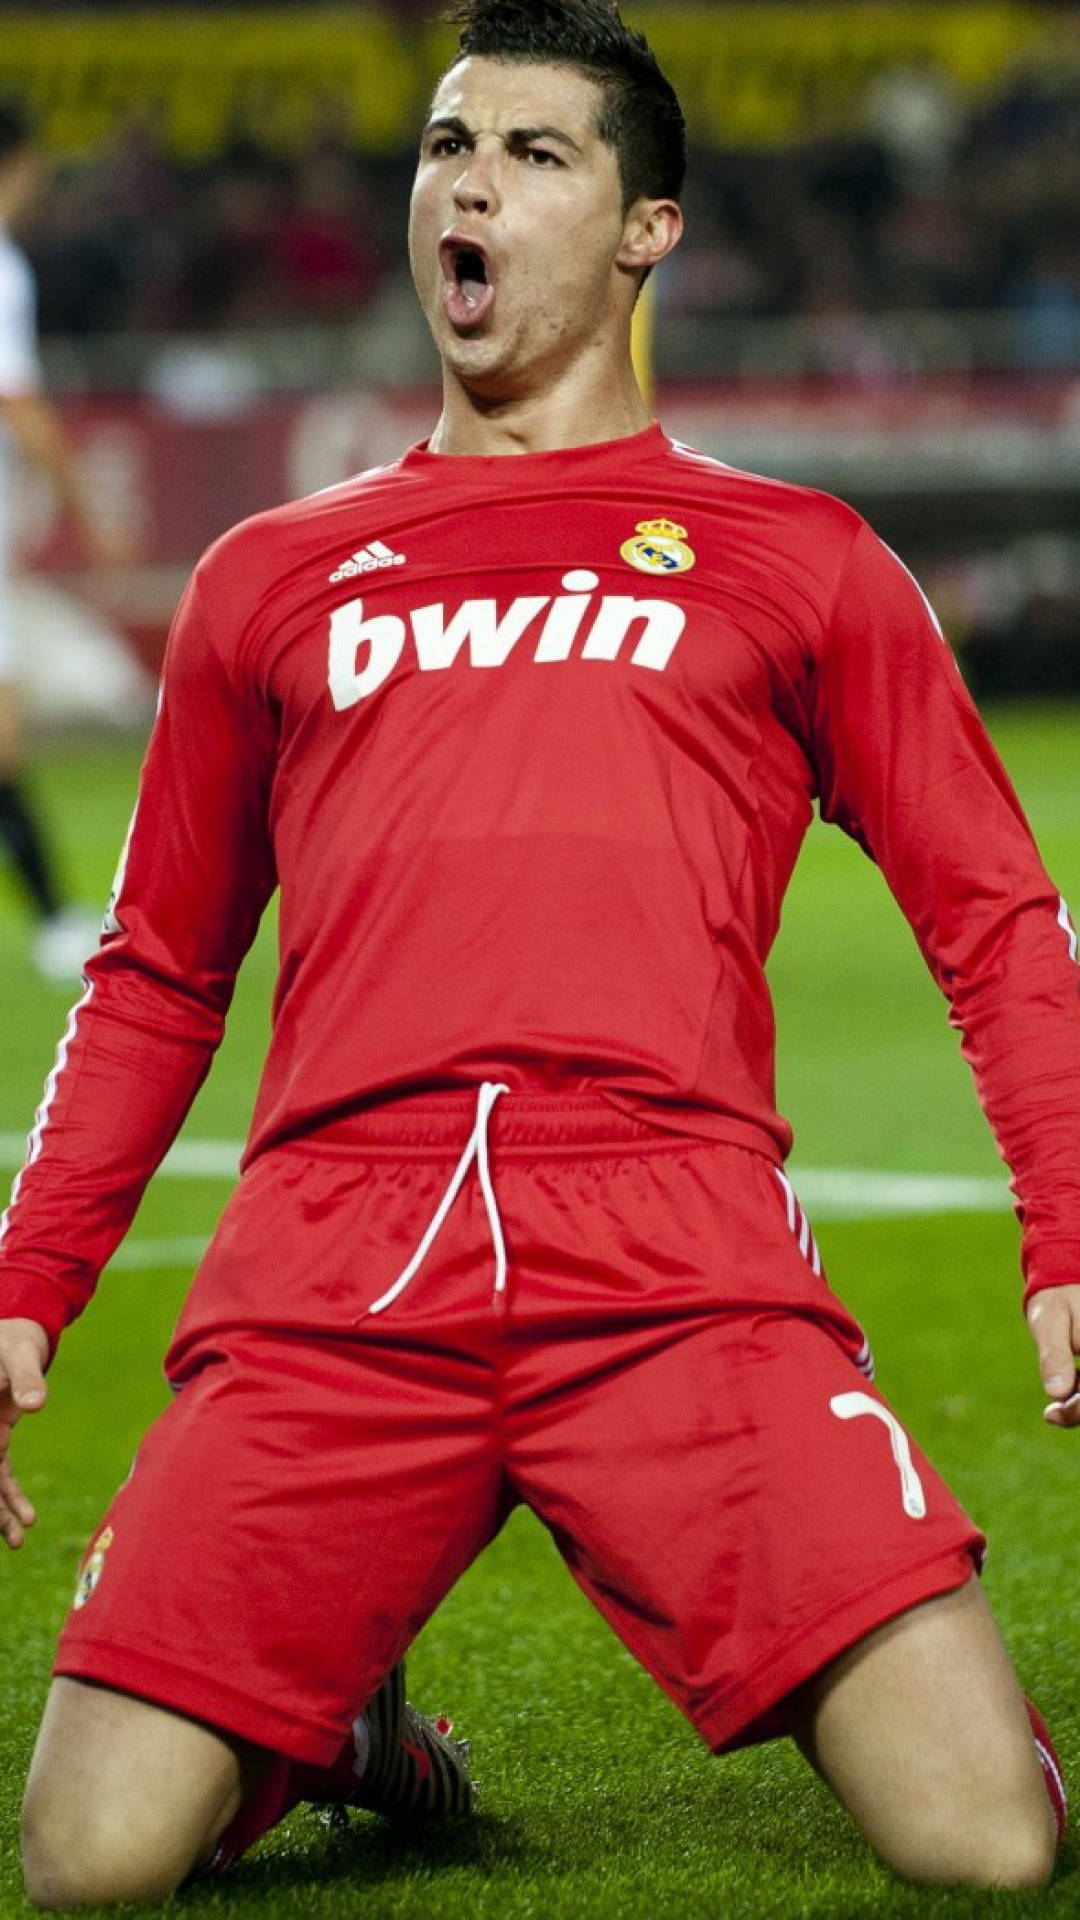 Cristiano Ronaldo Portugal Red Bwin Background